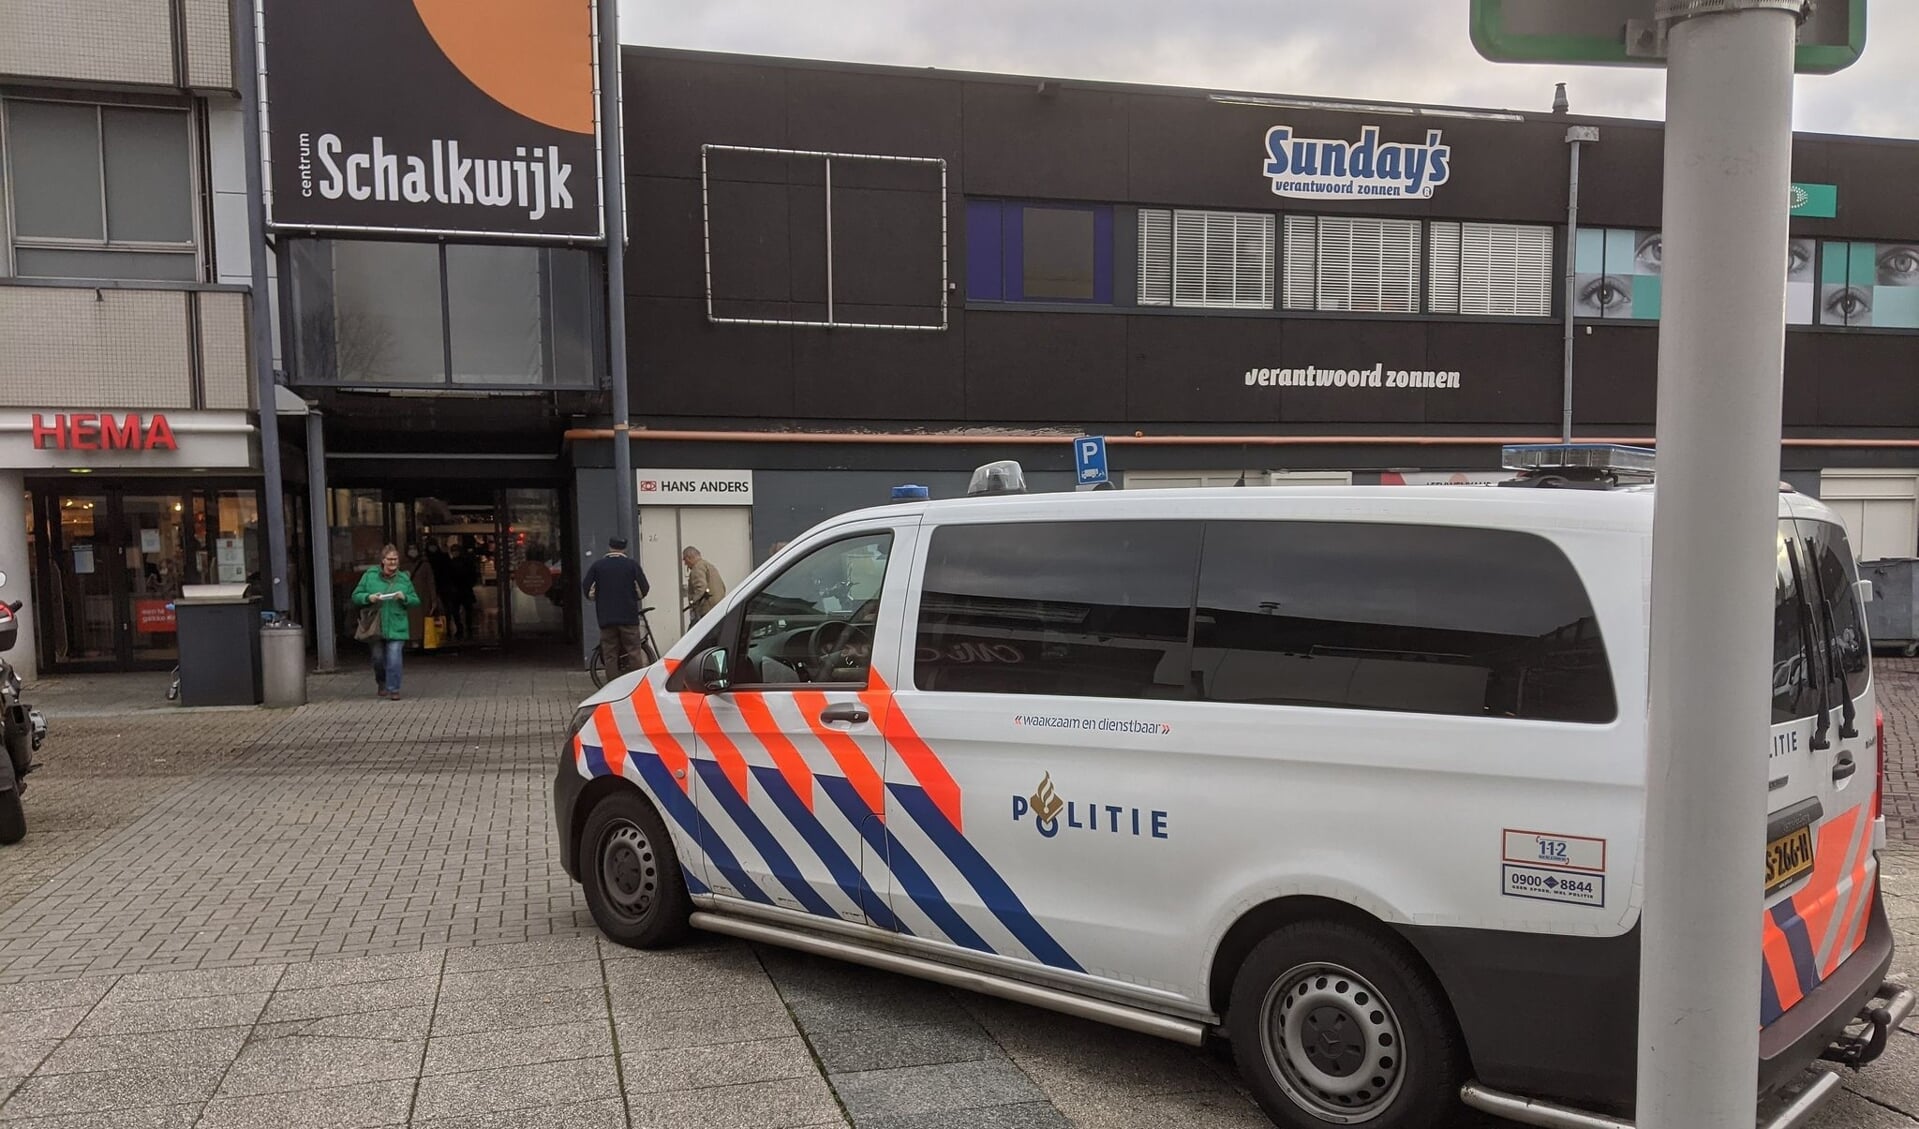 Overval telefoonwinkel Schalkwijk, daders nog voortvluchtig.